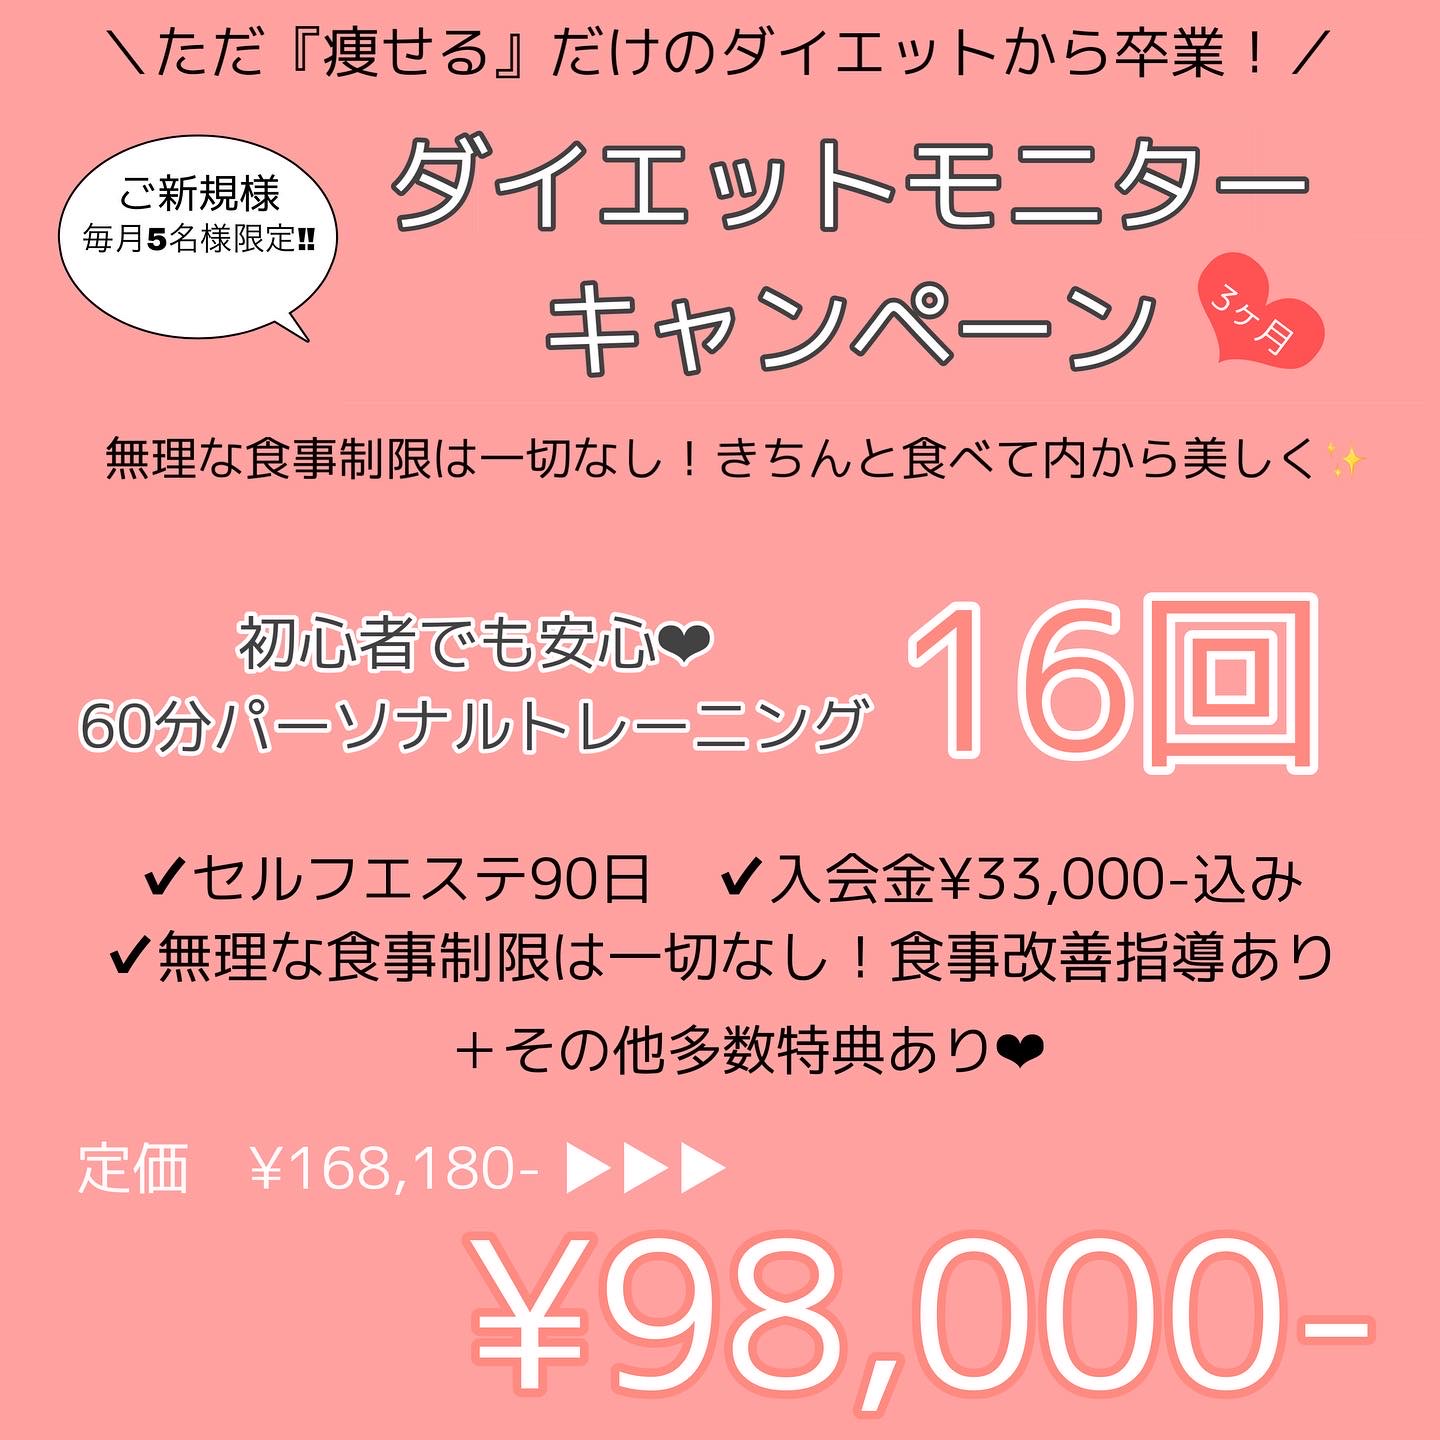 【6月】ダイエットモニター♡キャンペーン